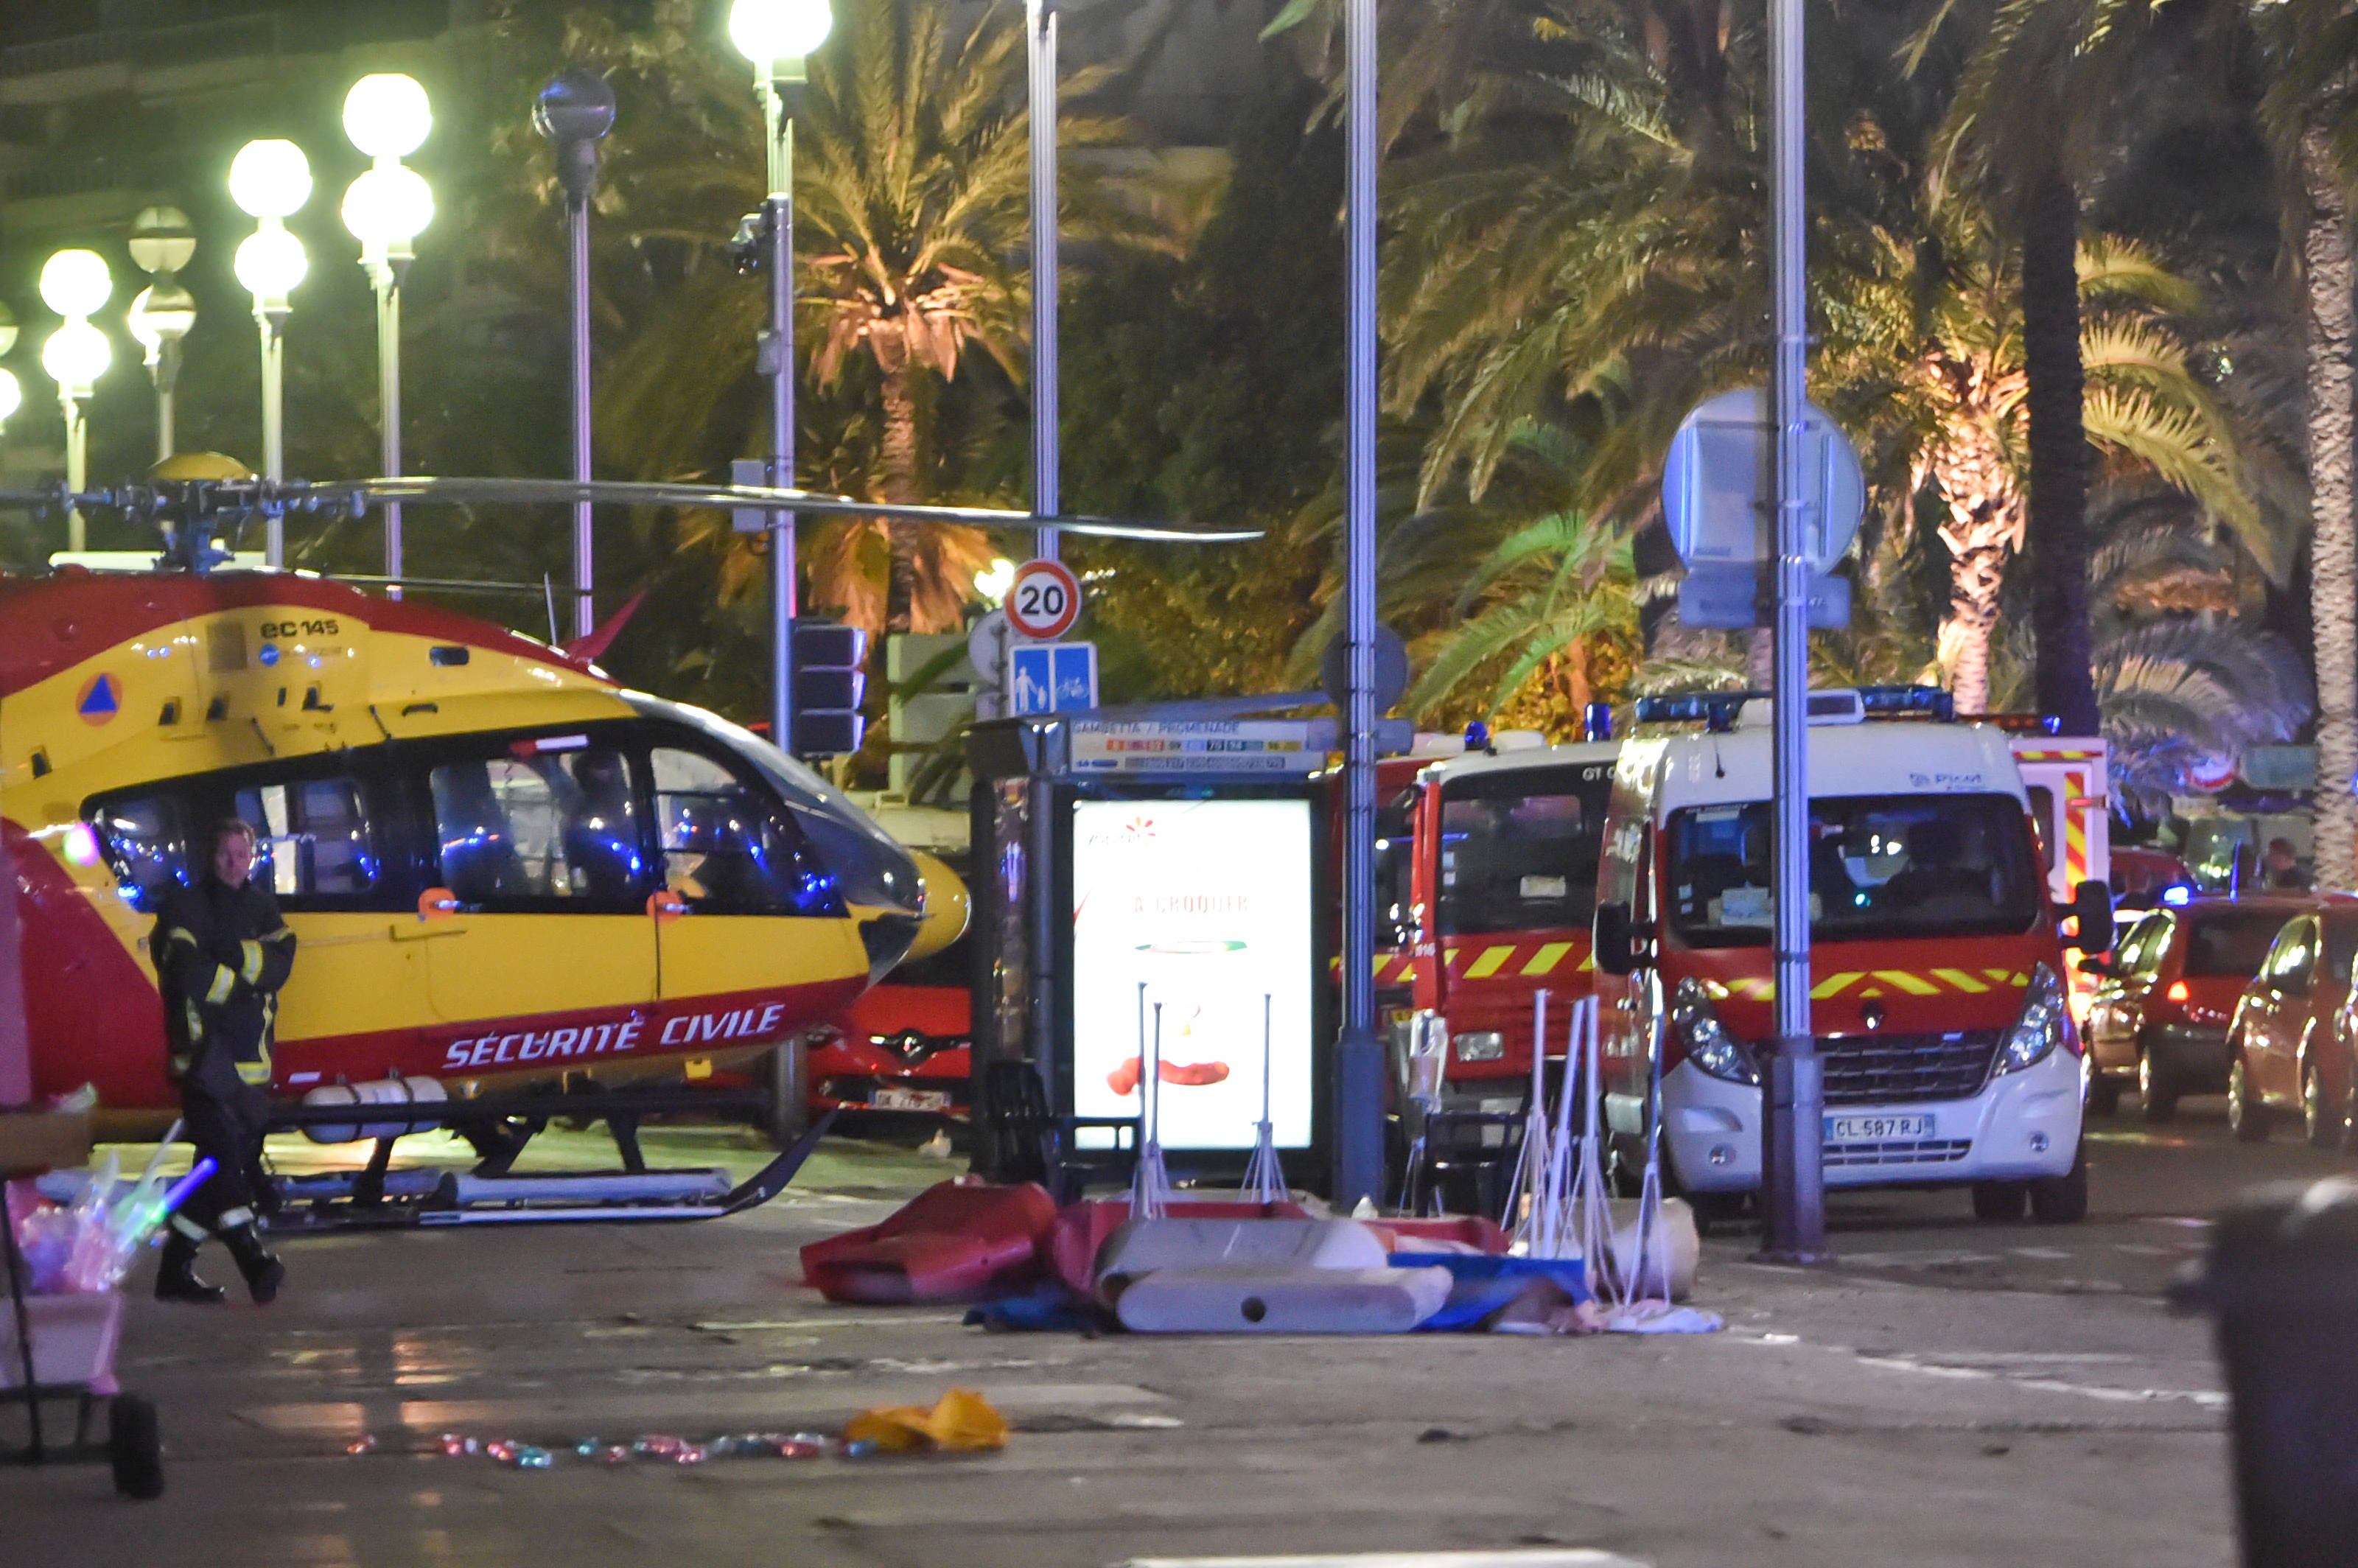 Mass Media criticata pentru fotografiile explicite de la atentatul din nisa